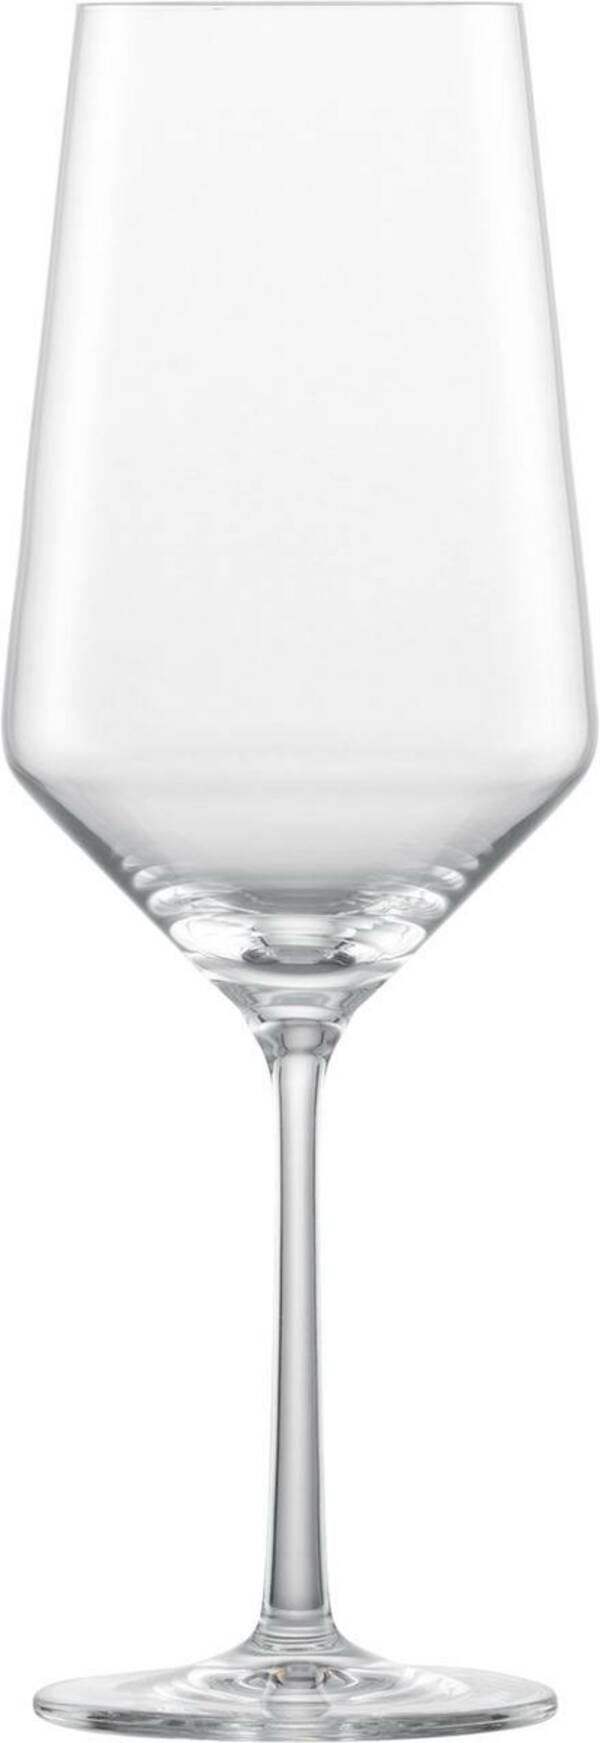 Bild 1 von SCHOTT ZWIESEL Bordeauxglas PURE, Kristallglas